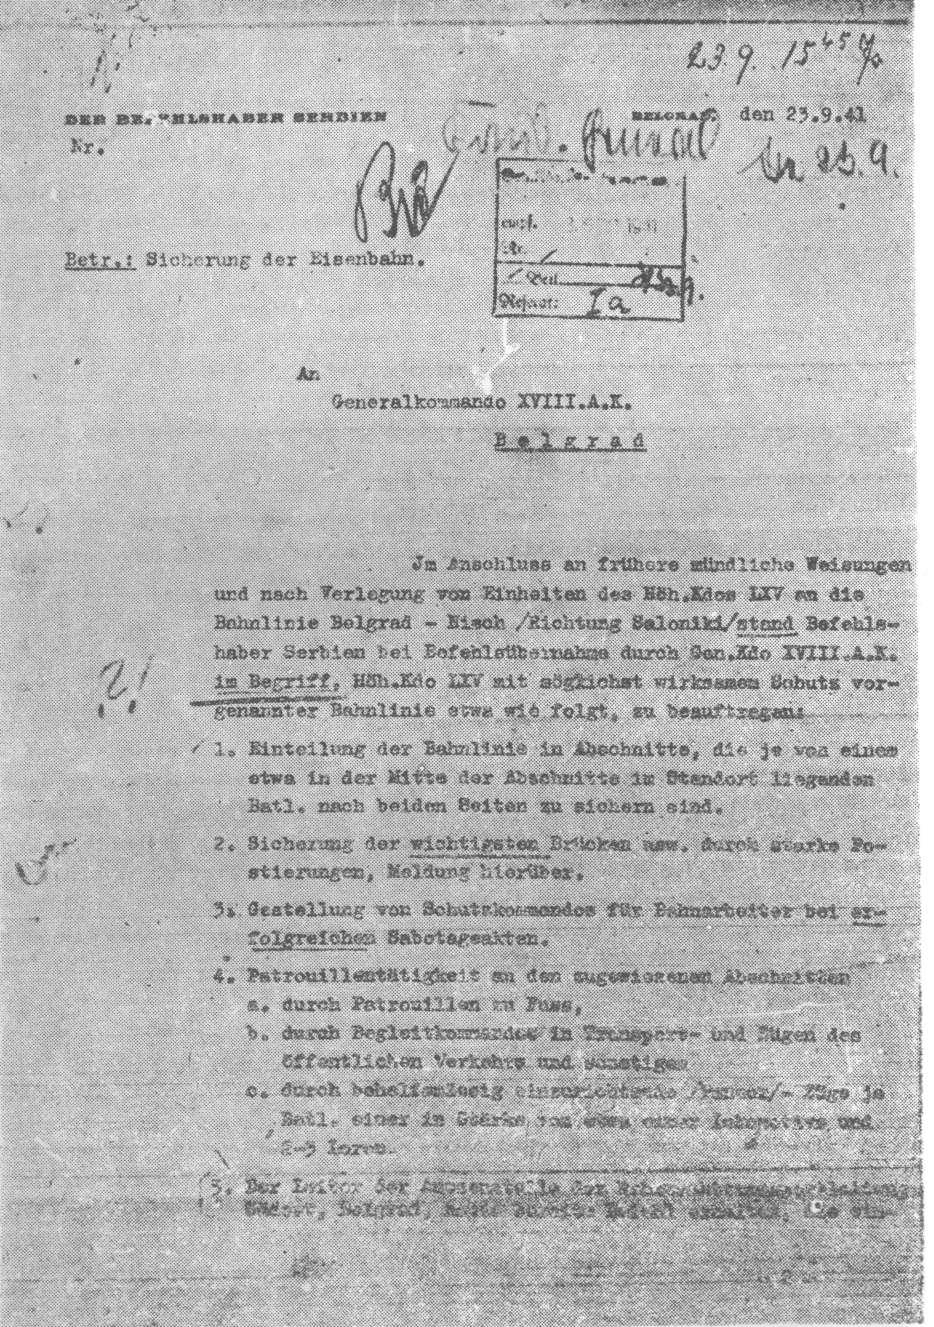 Prva strana pisma njemačkog opunomoćenog komandanta u Srbiji od 23. septembra 1941.